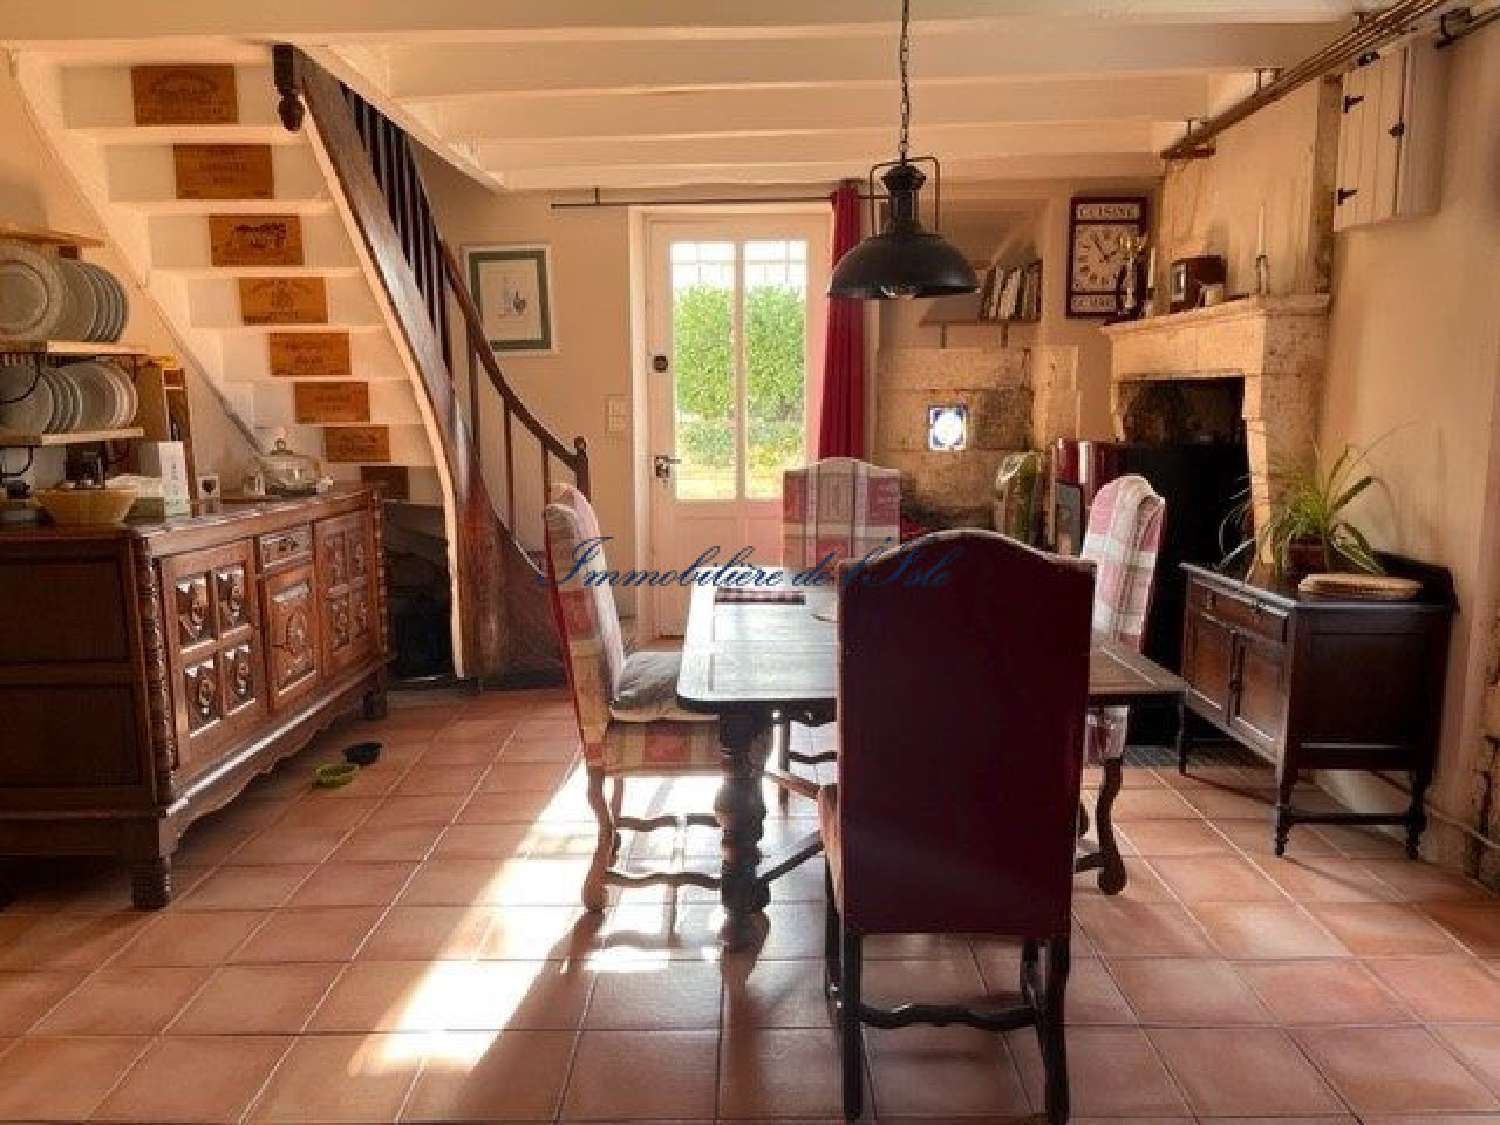  à vendre maison Verteillac Dordogne 3